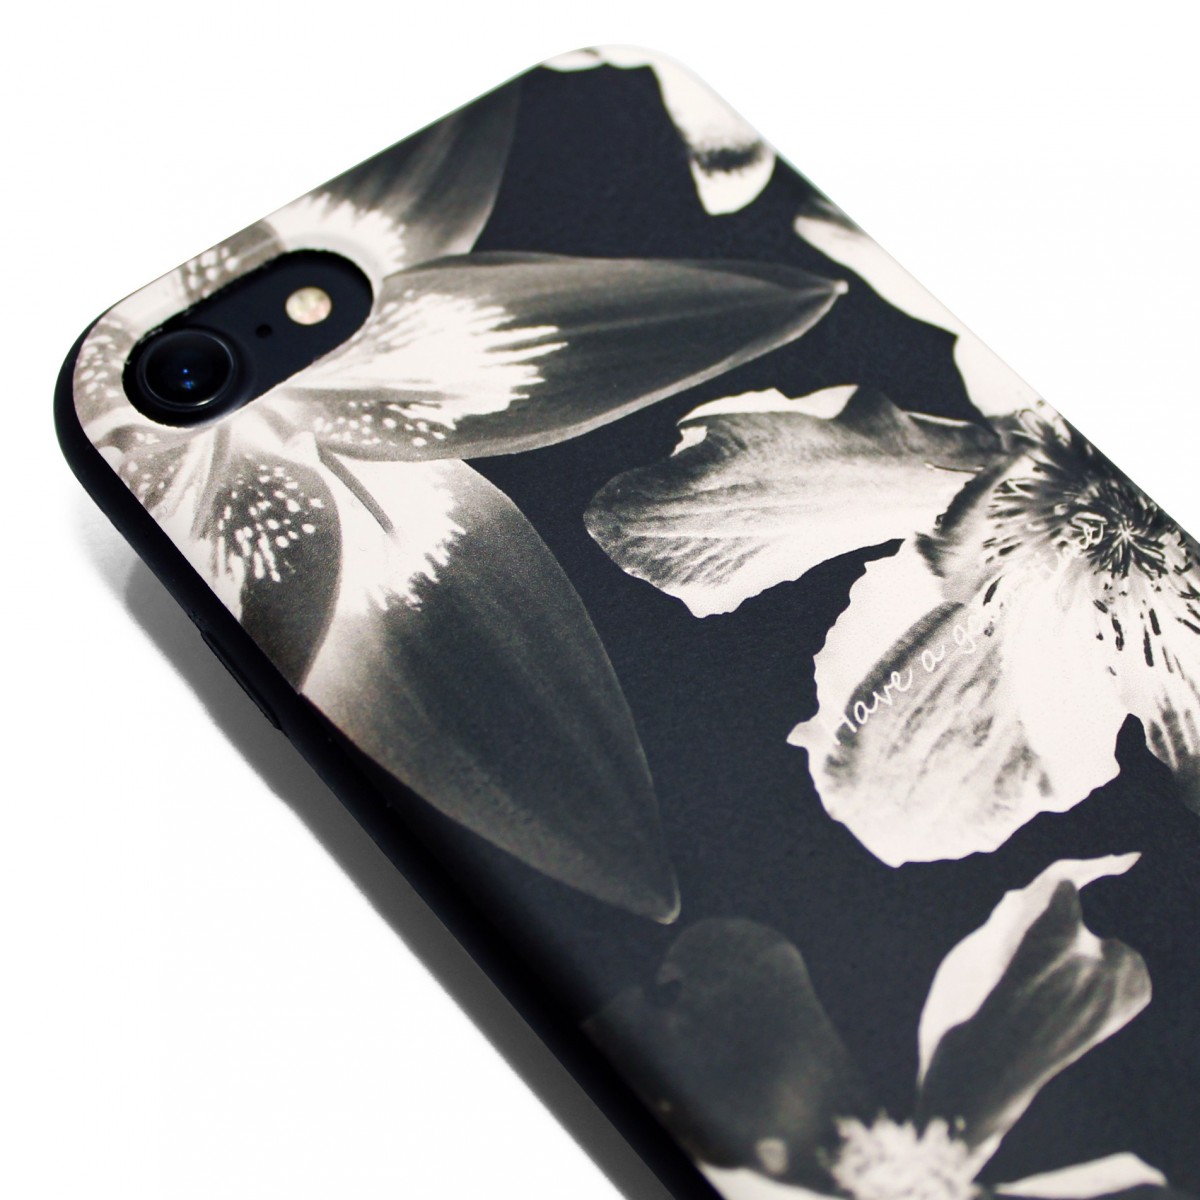 Iphone7ケース 4 7寸用 軽量レザーケースiphone7カバー 花柄 ブラック ブラックフラワー Iichi ハンドメイド クラフト作品 手仕事品の通販